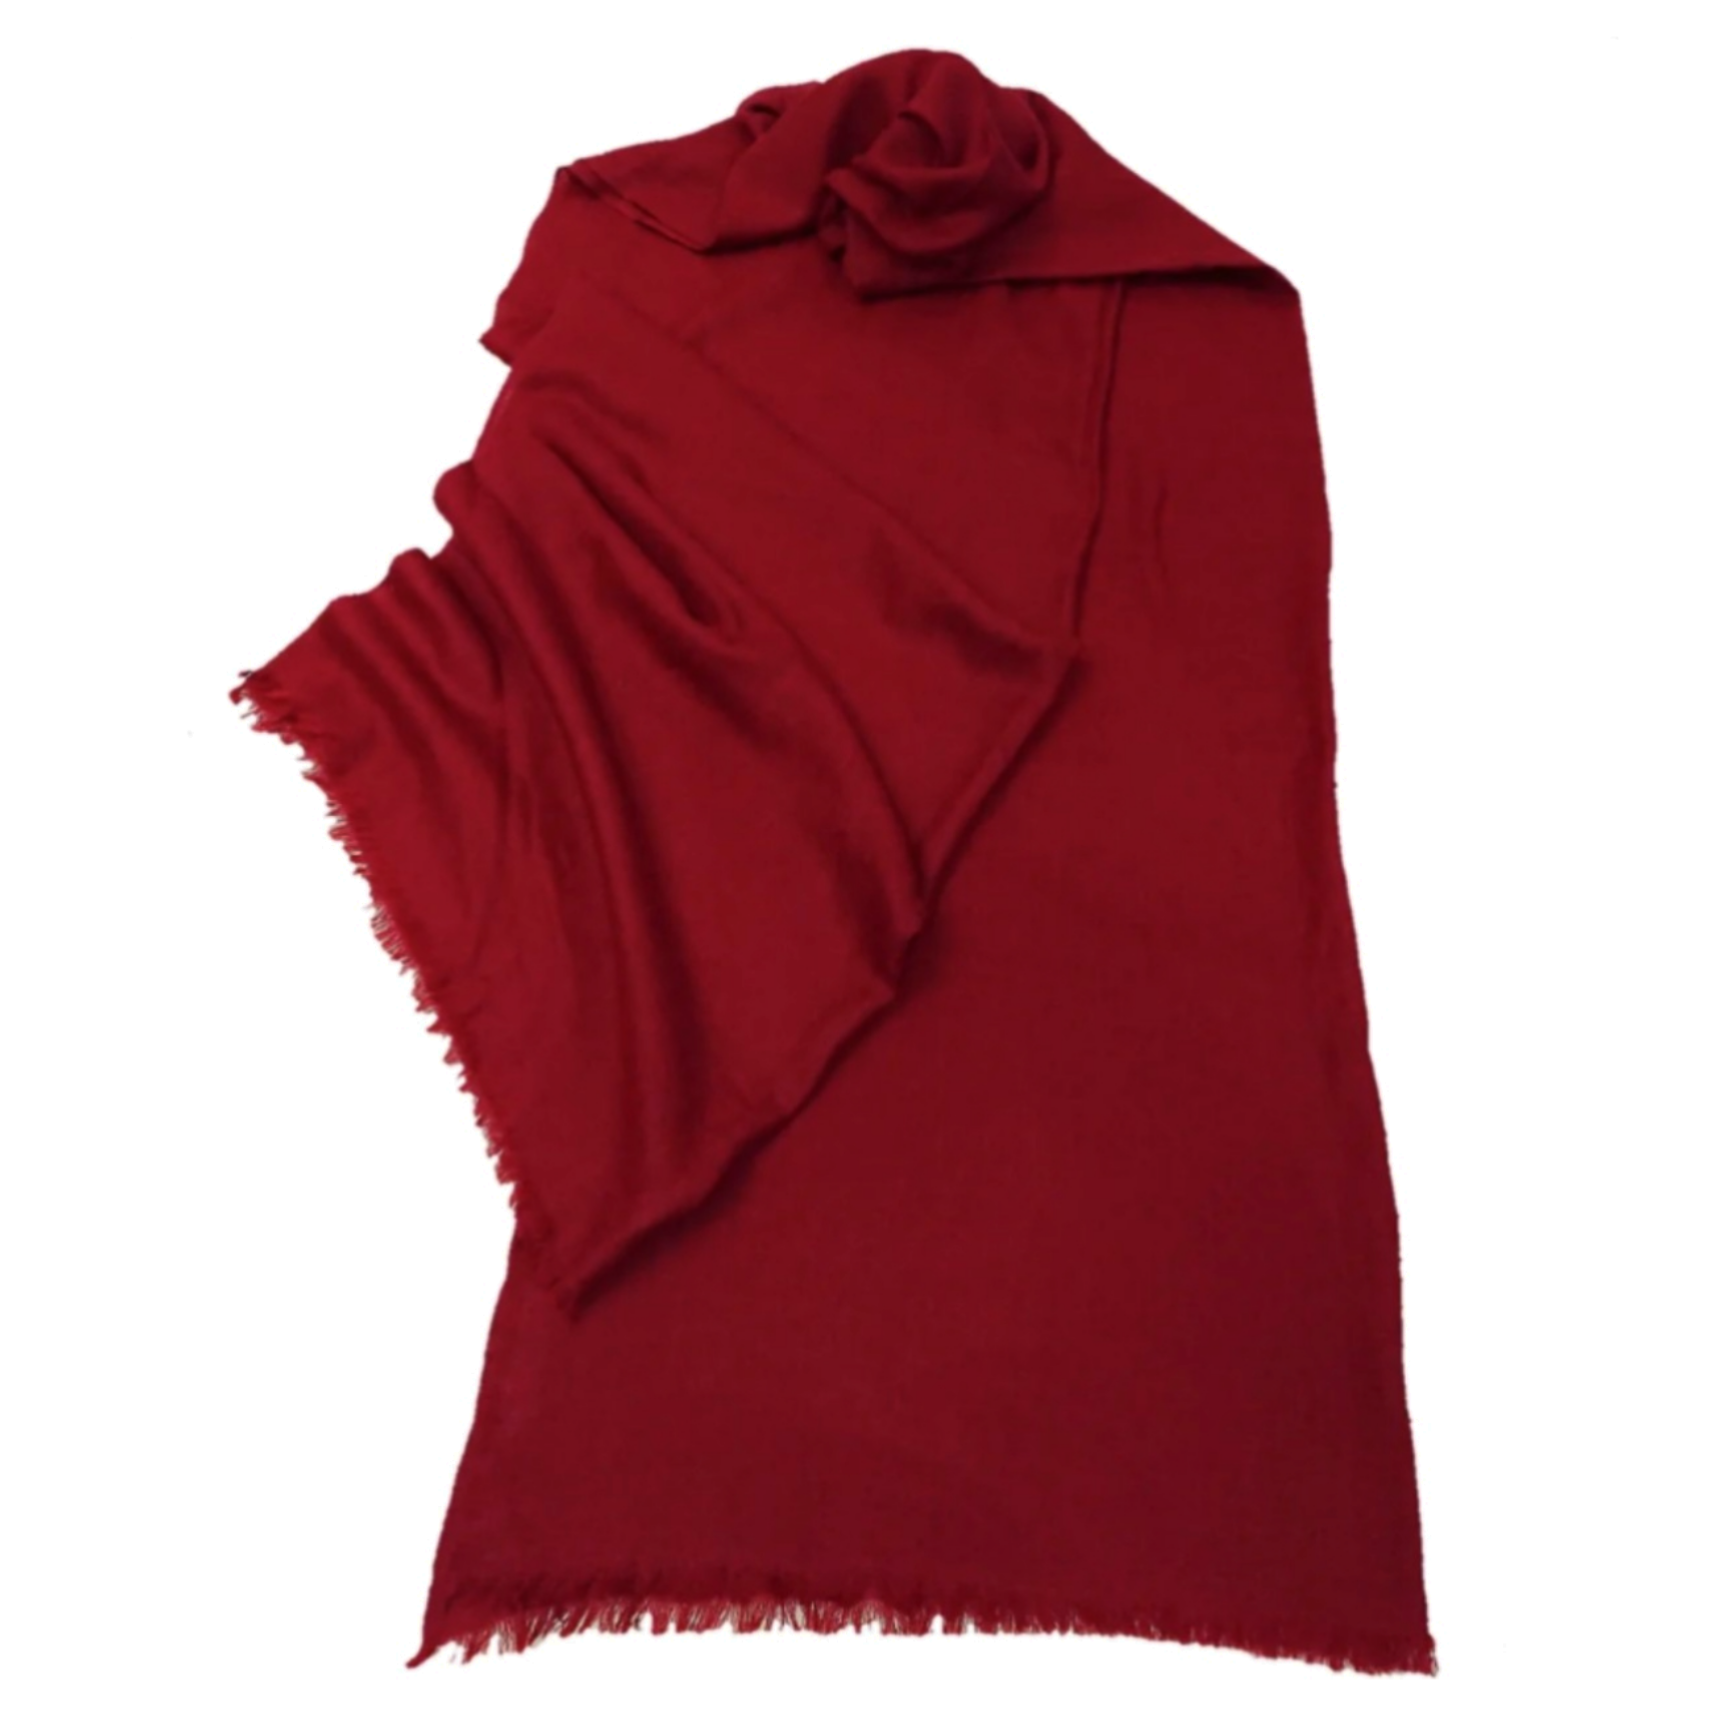  Red pashmina wool shawl